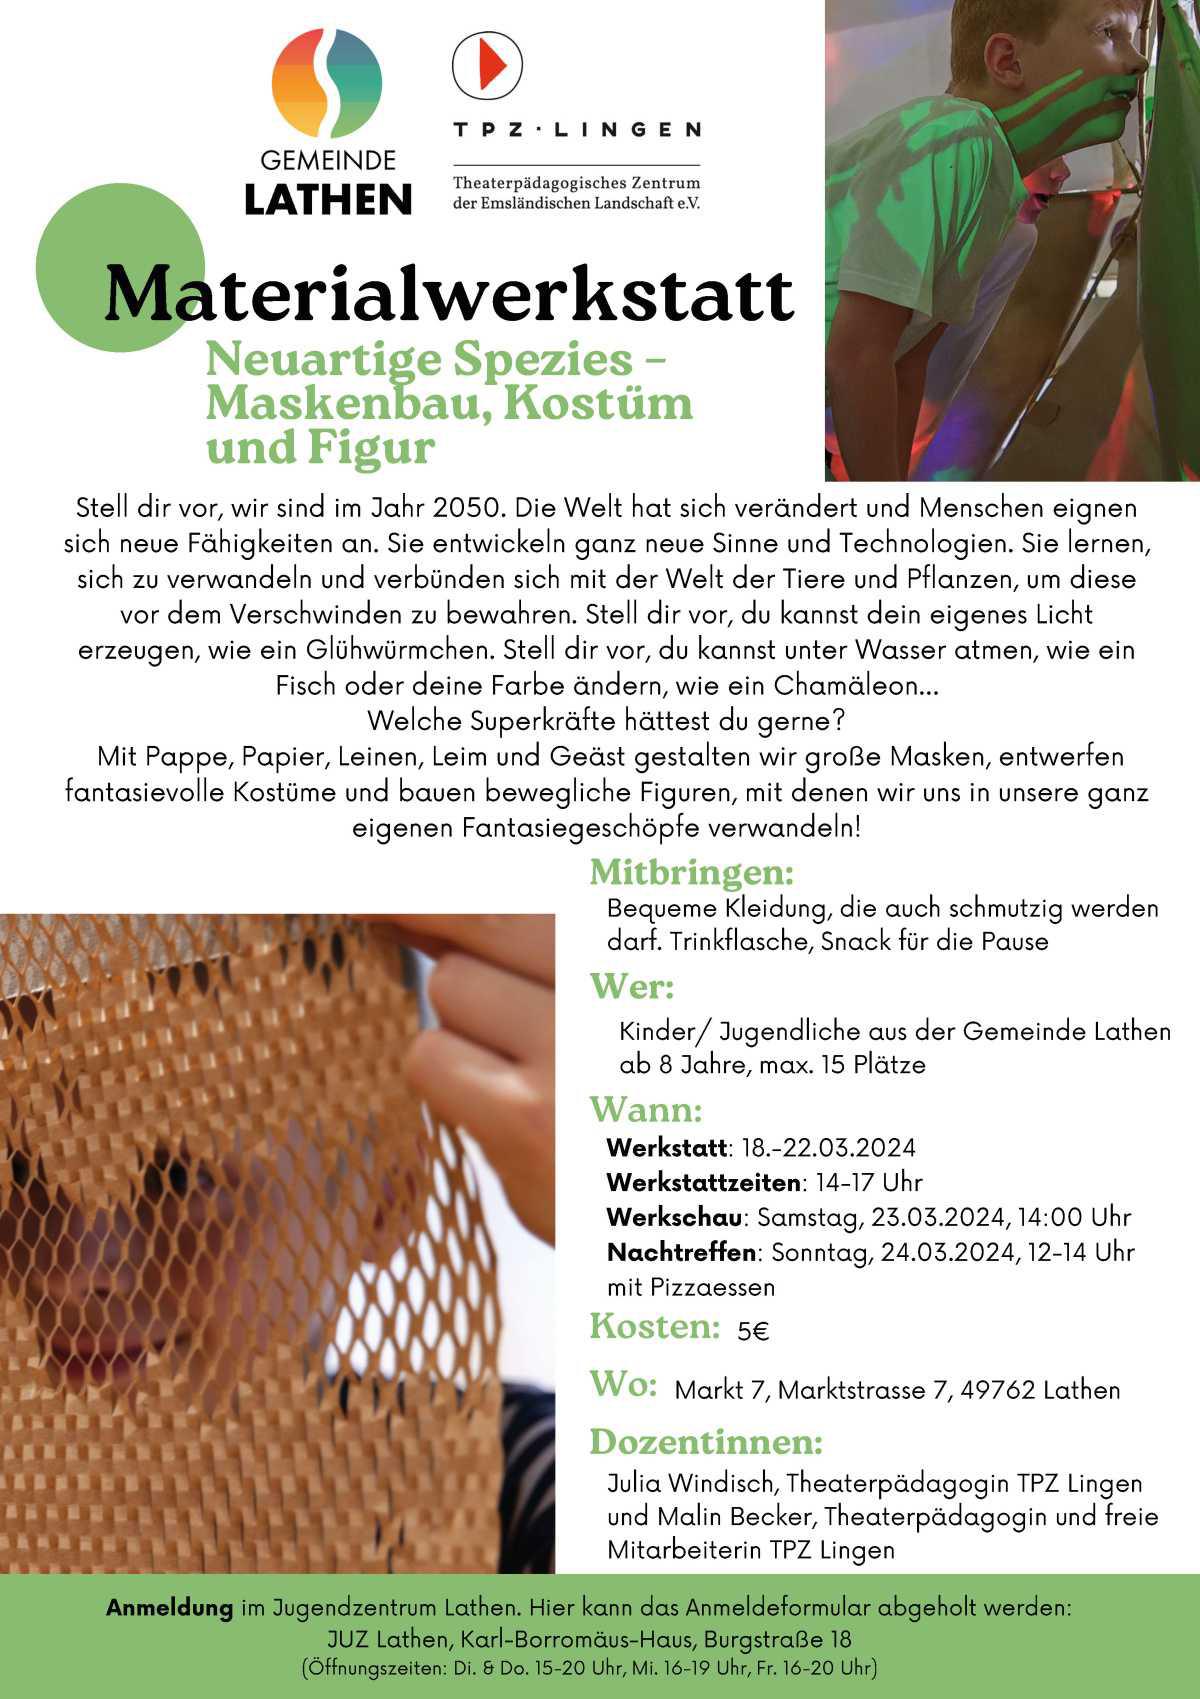 Materialwerkstatt für Kinder / Jugendliche aus der Gemeinde Lathen